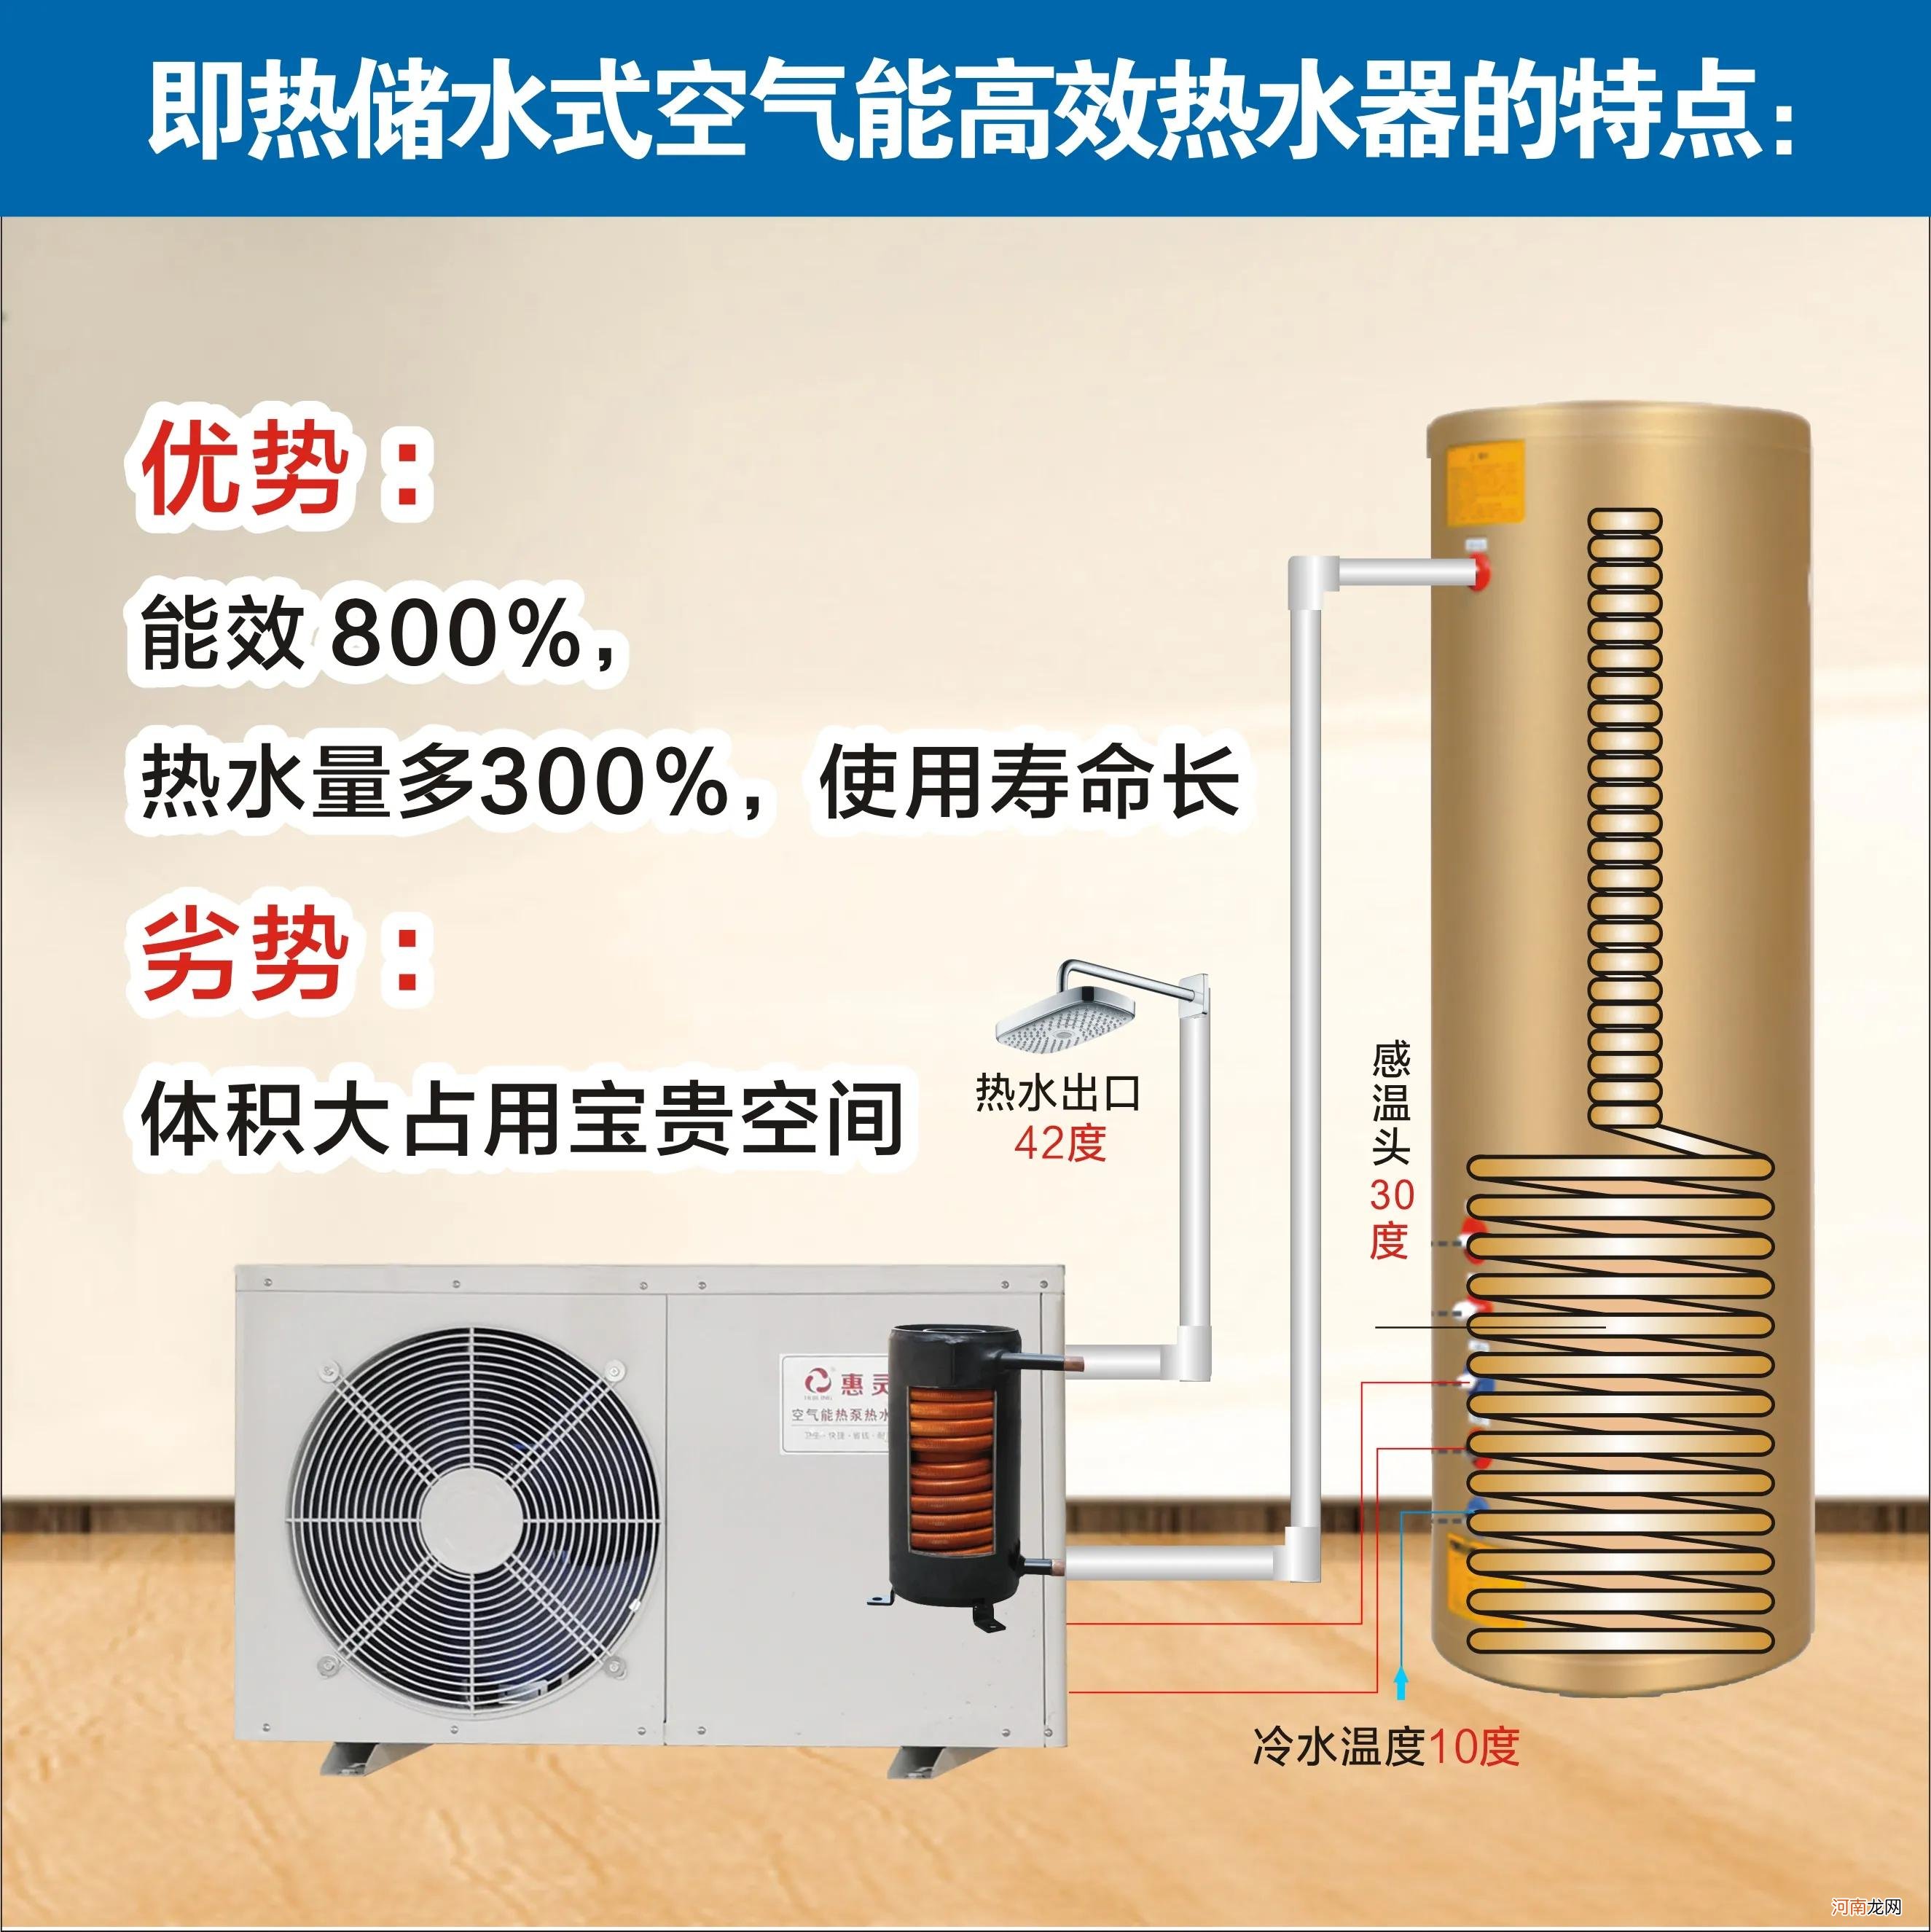 家用燃气热水器的使用寿命 热水器一般寿命多少年